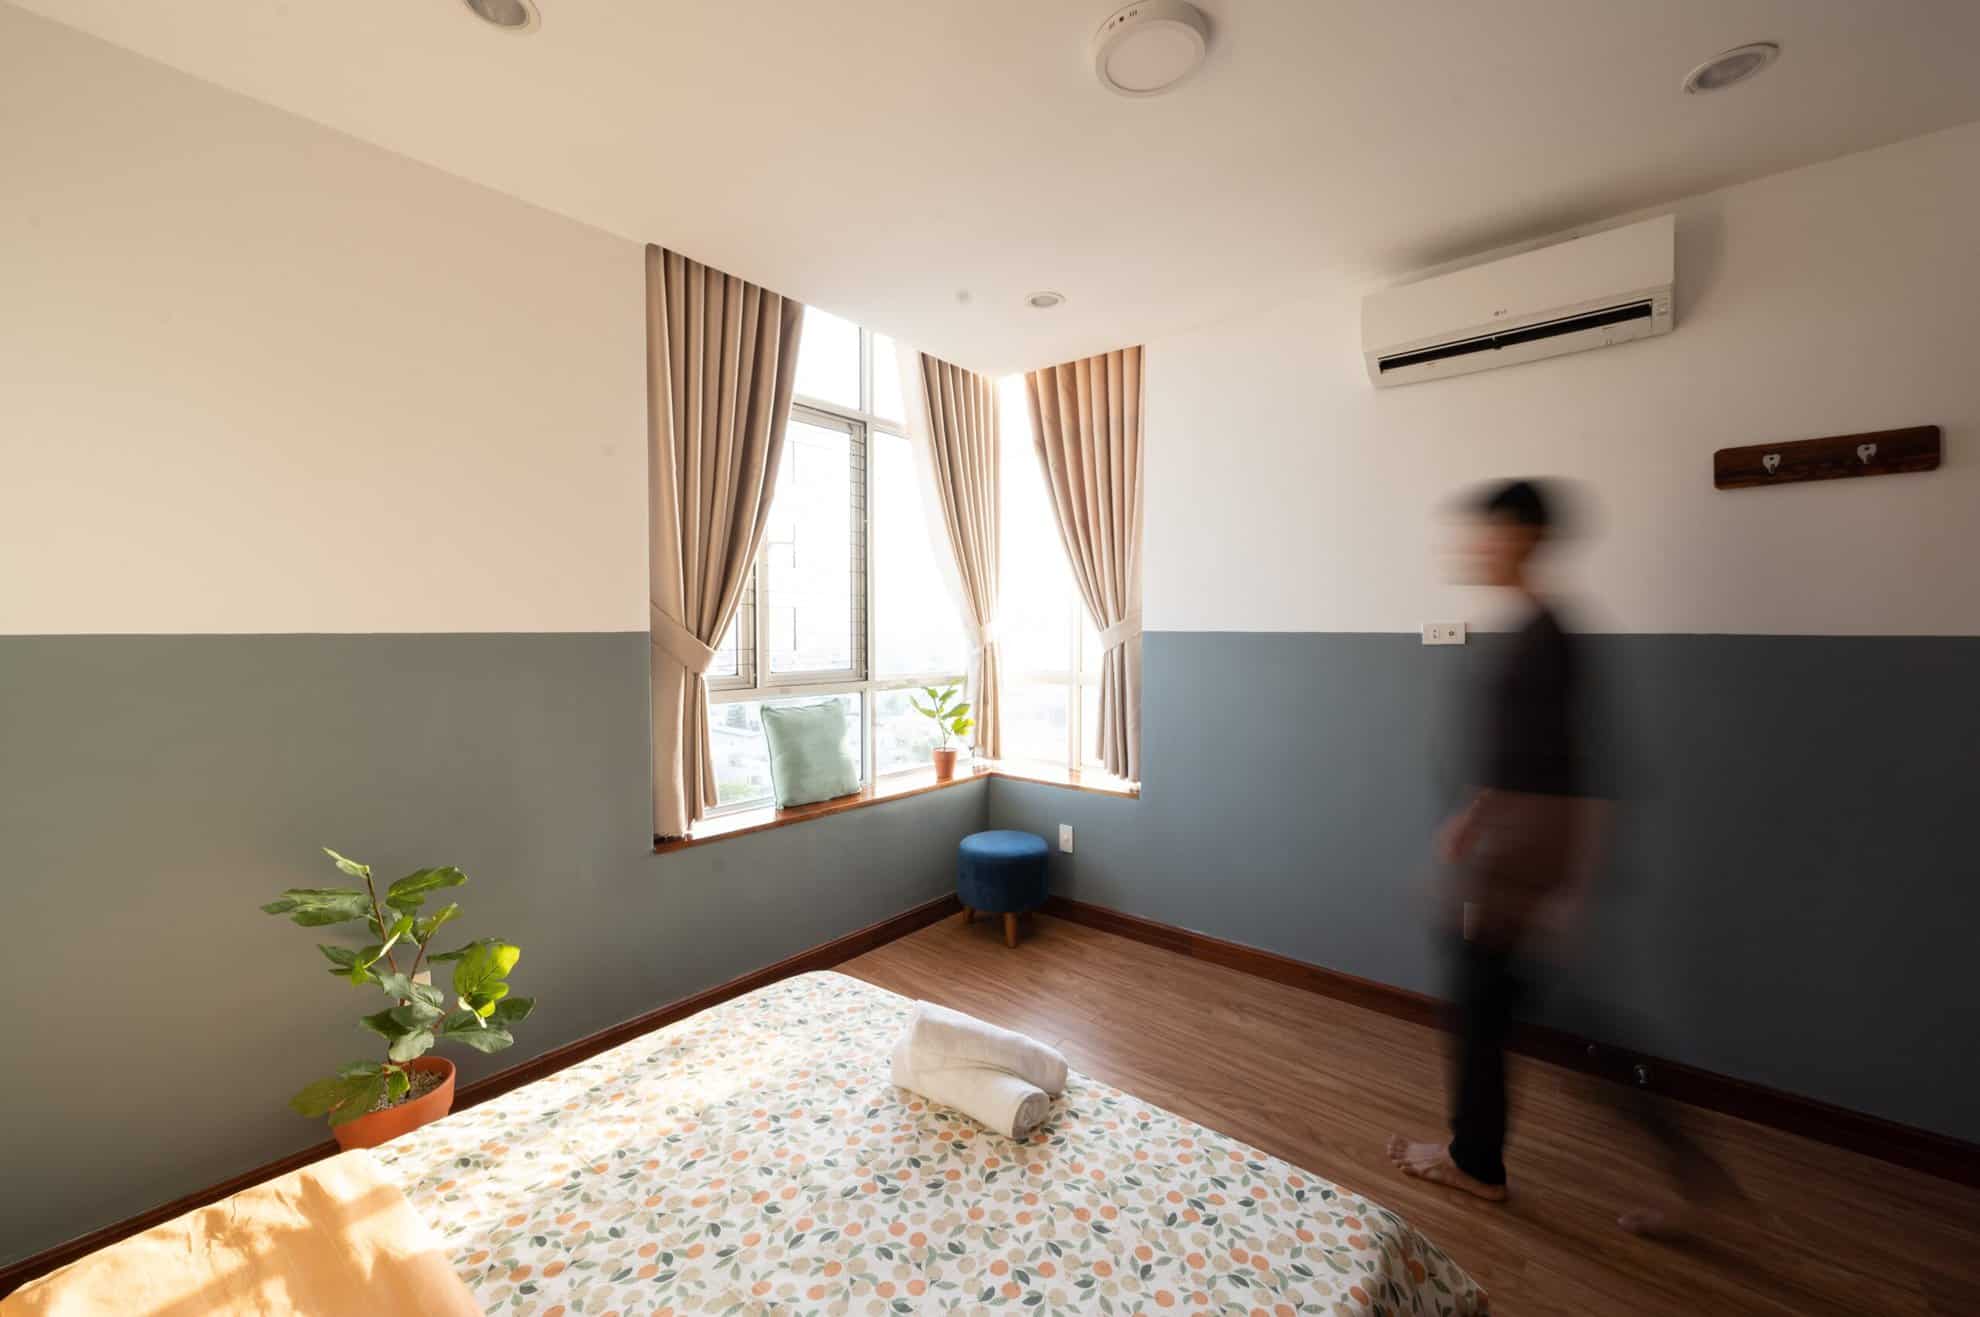 [3/2022] Dự án cải tạo căn hộ cho thuê du lịch tại Quy Nhơn - Before & After 35